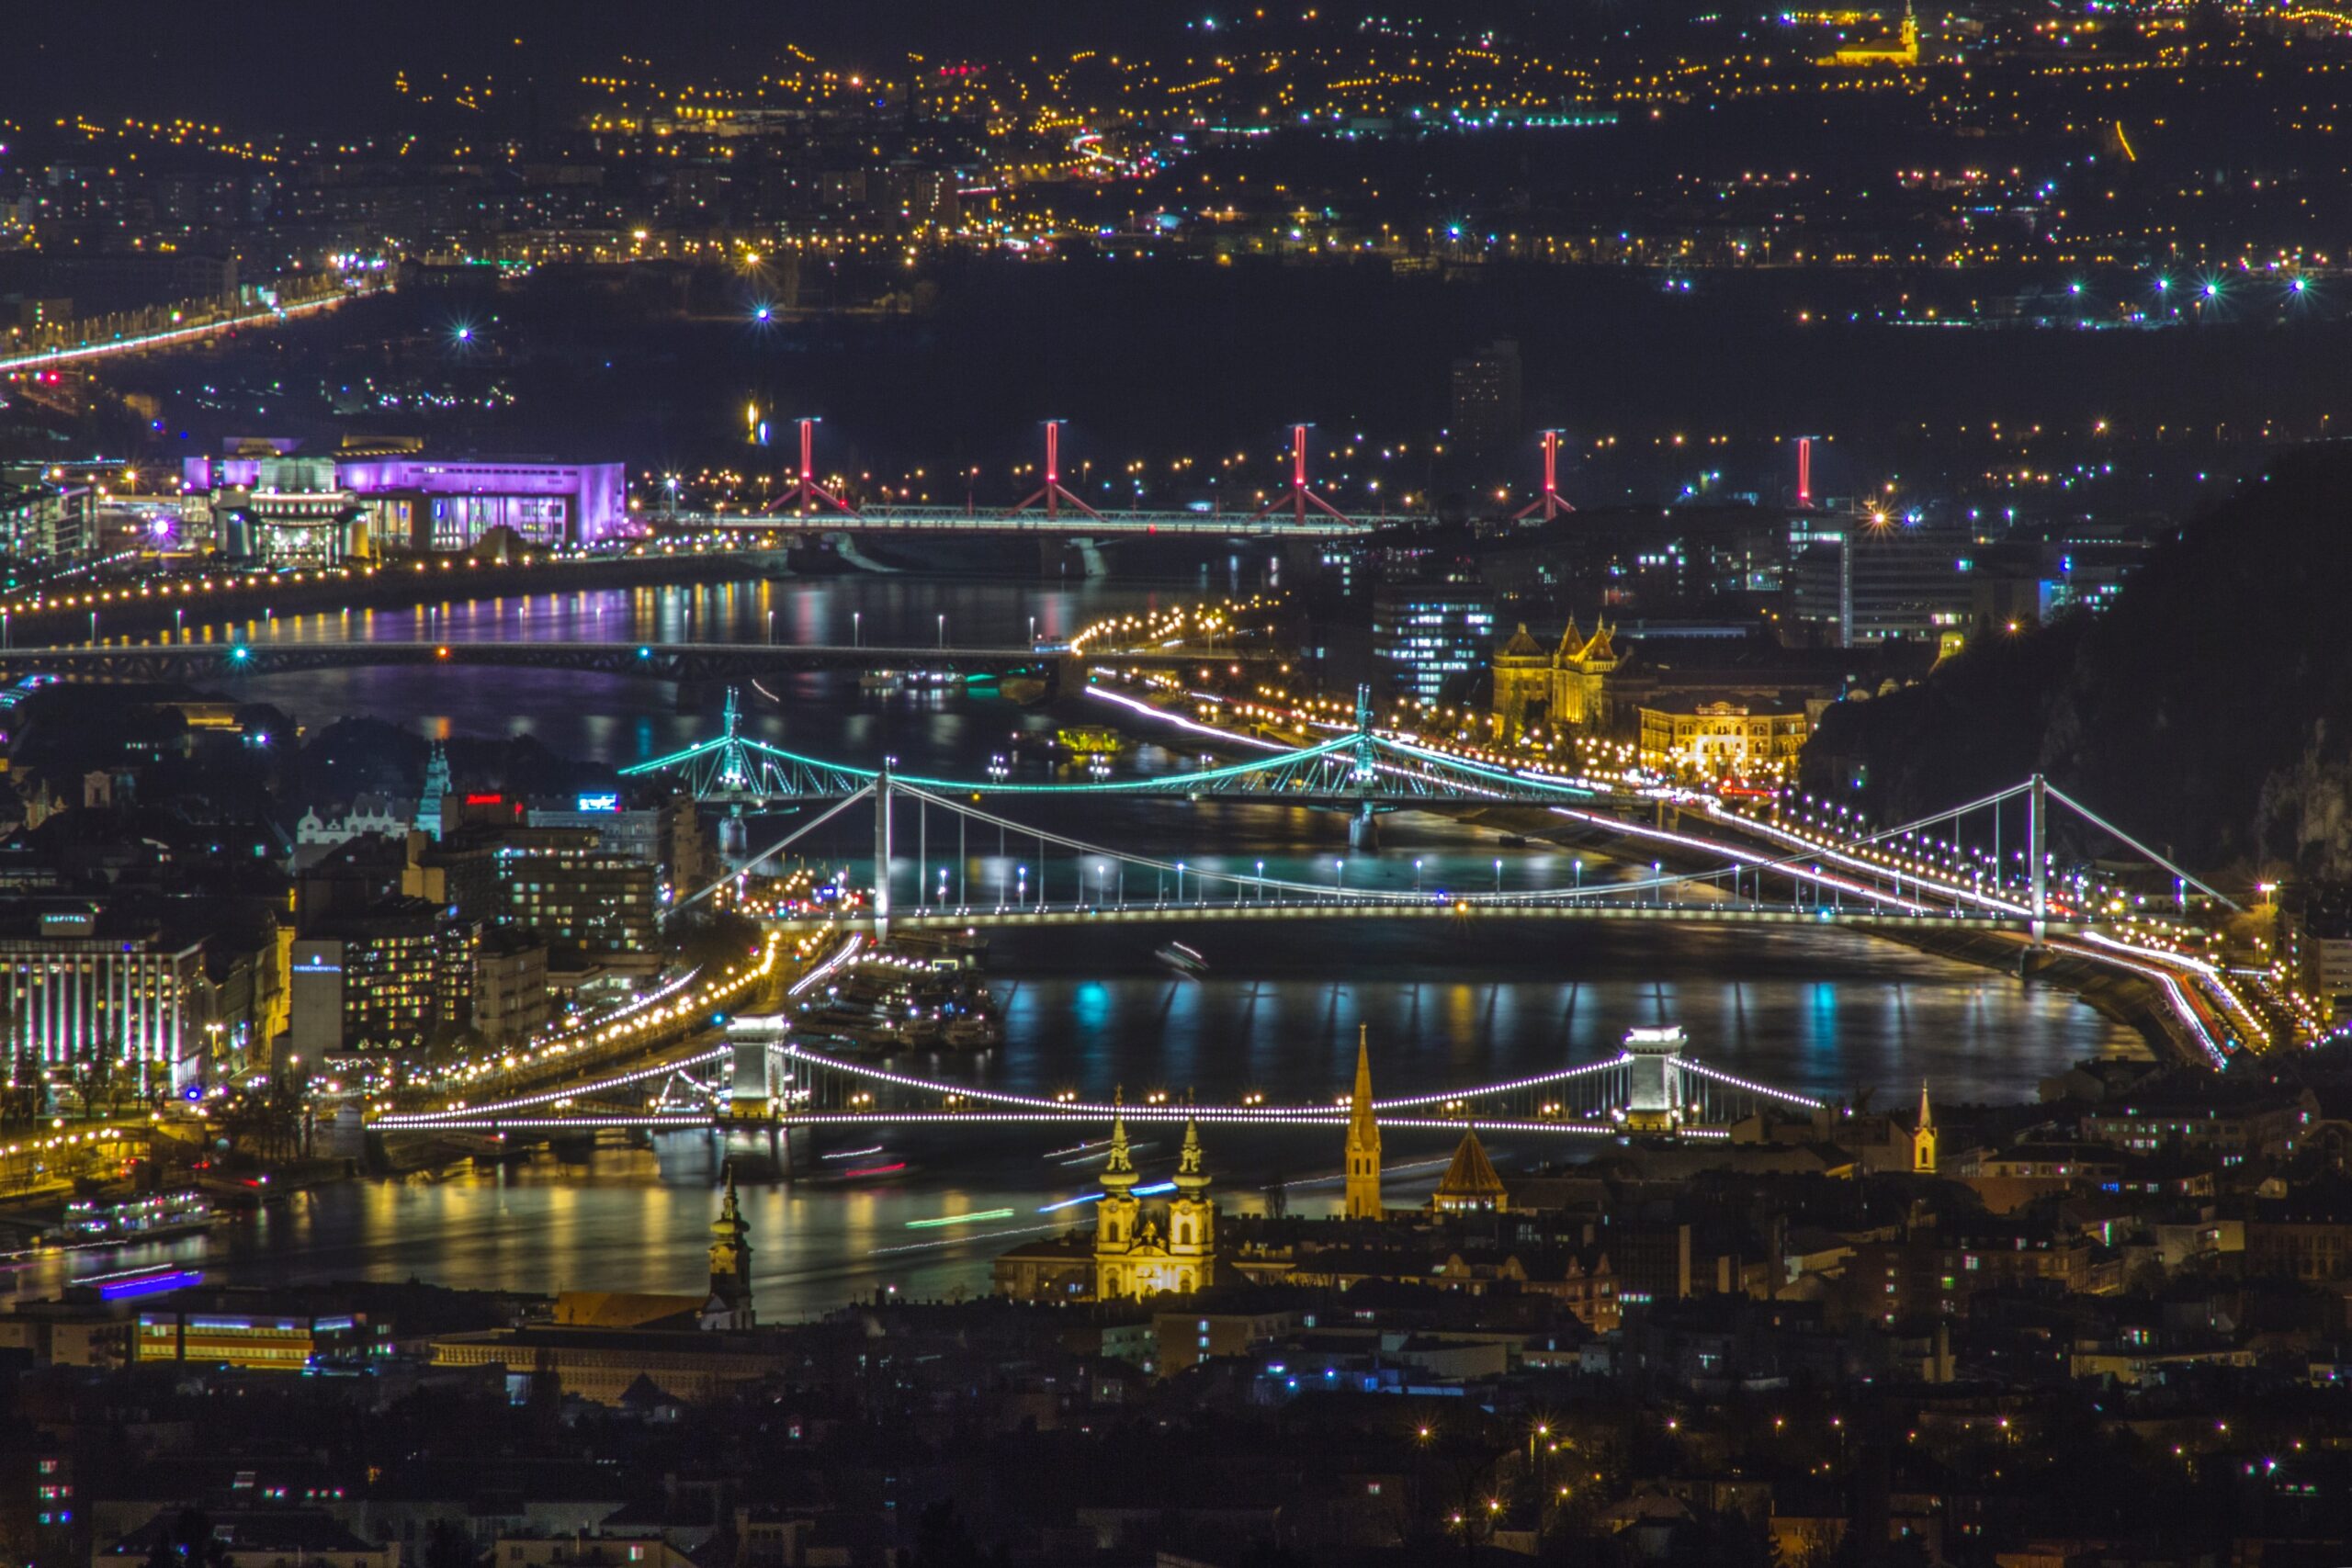 Hármashatárhegy, Budapest, Hungary